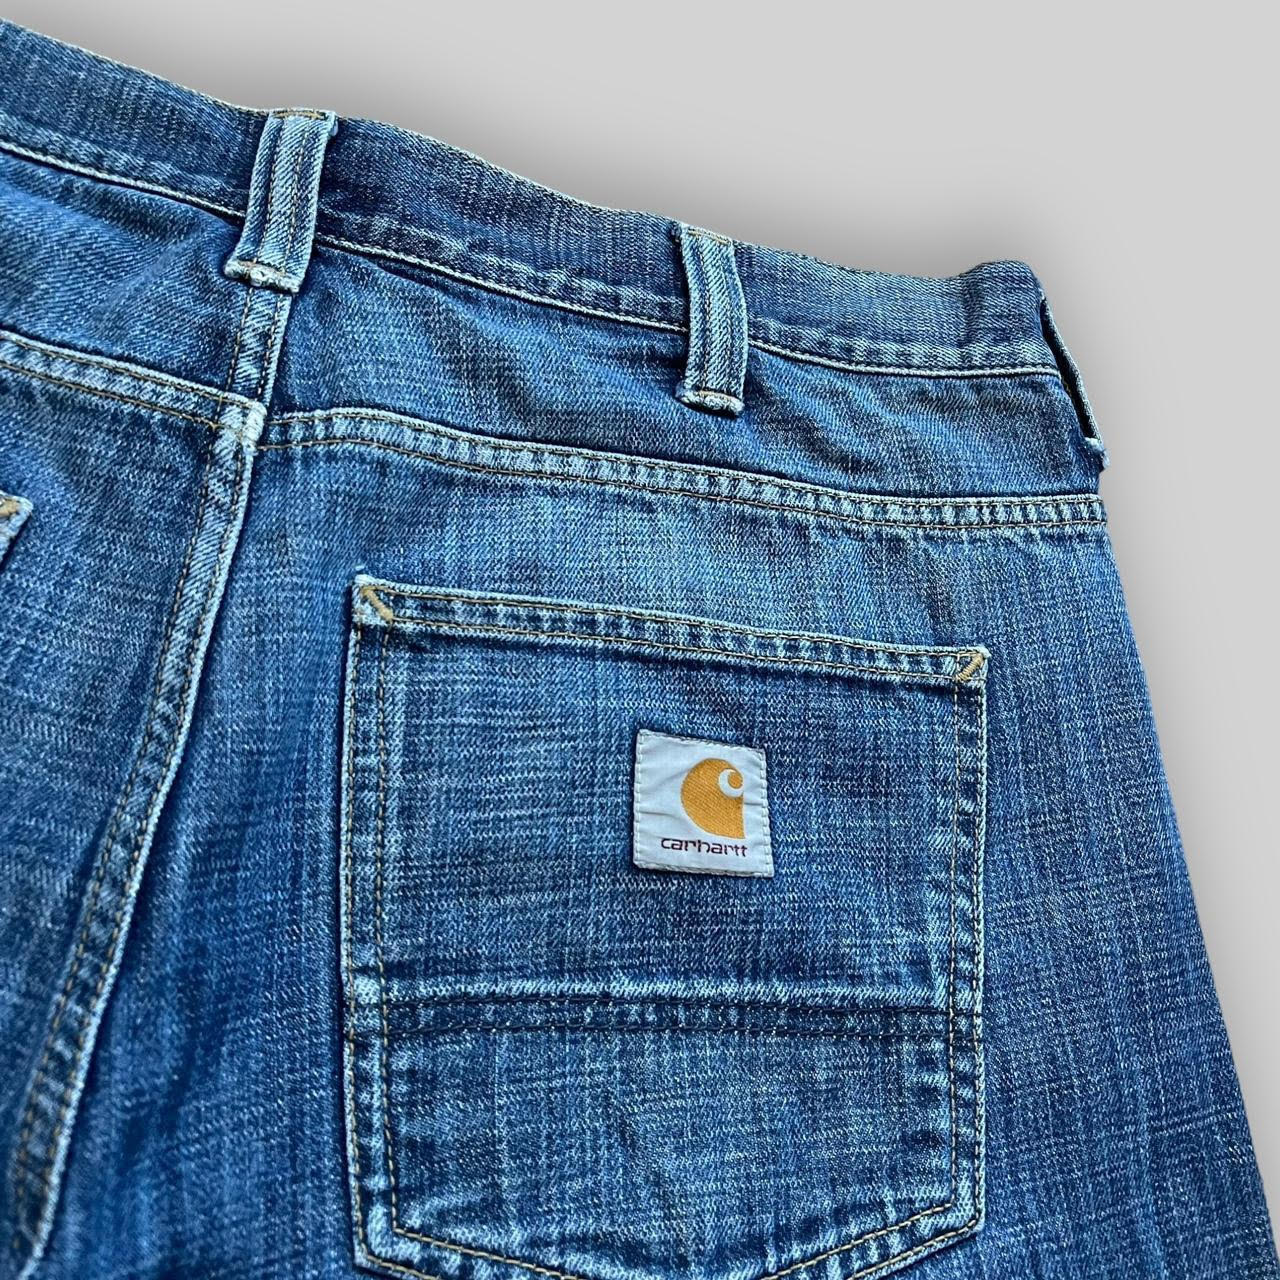 Carhartt Denim Jeans Shorts (36)